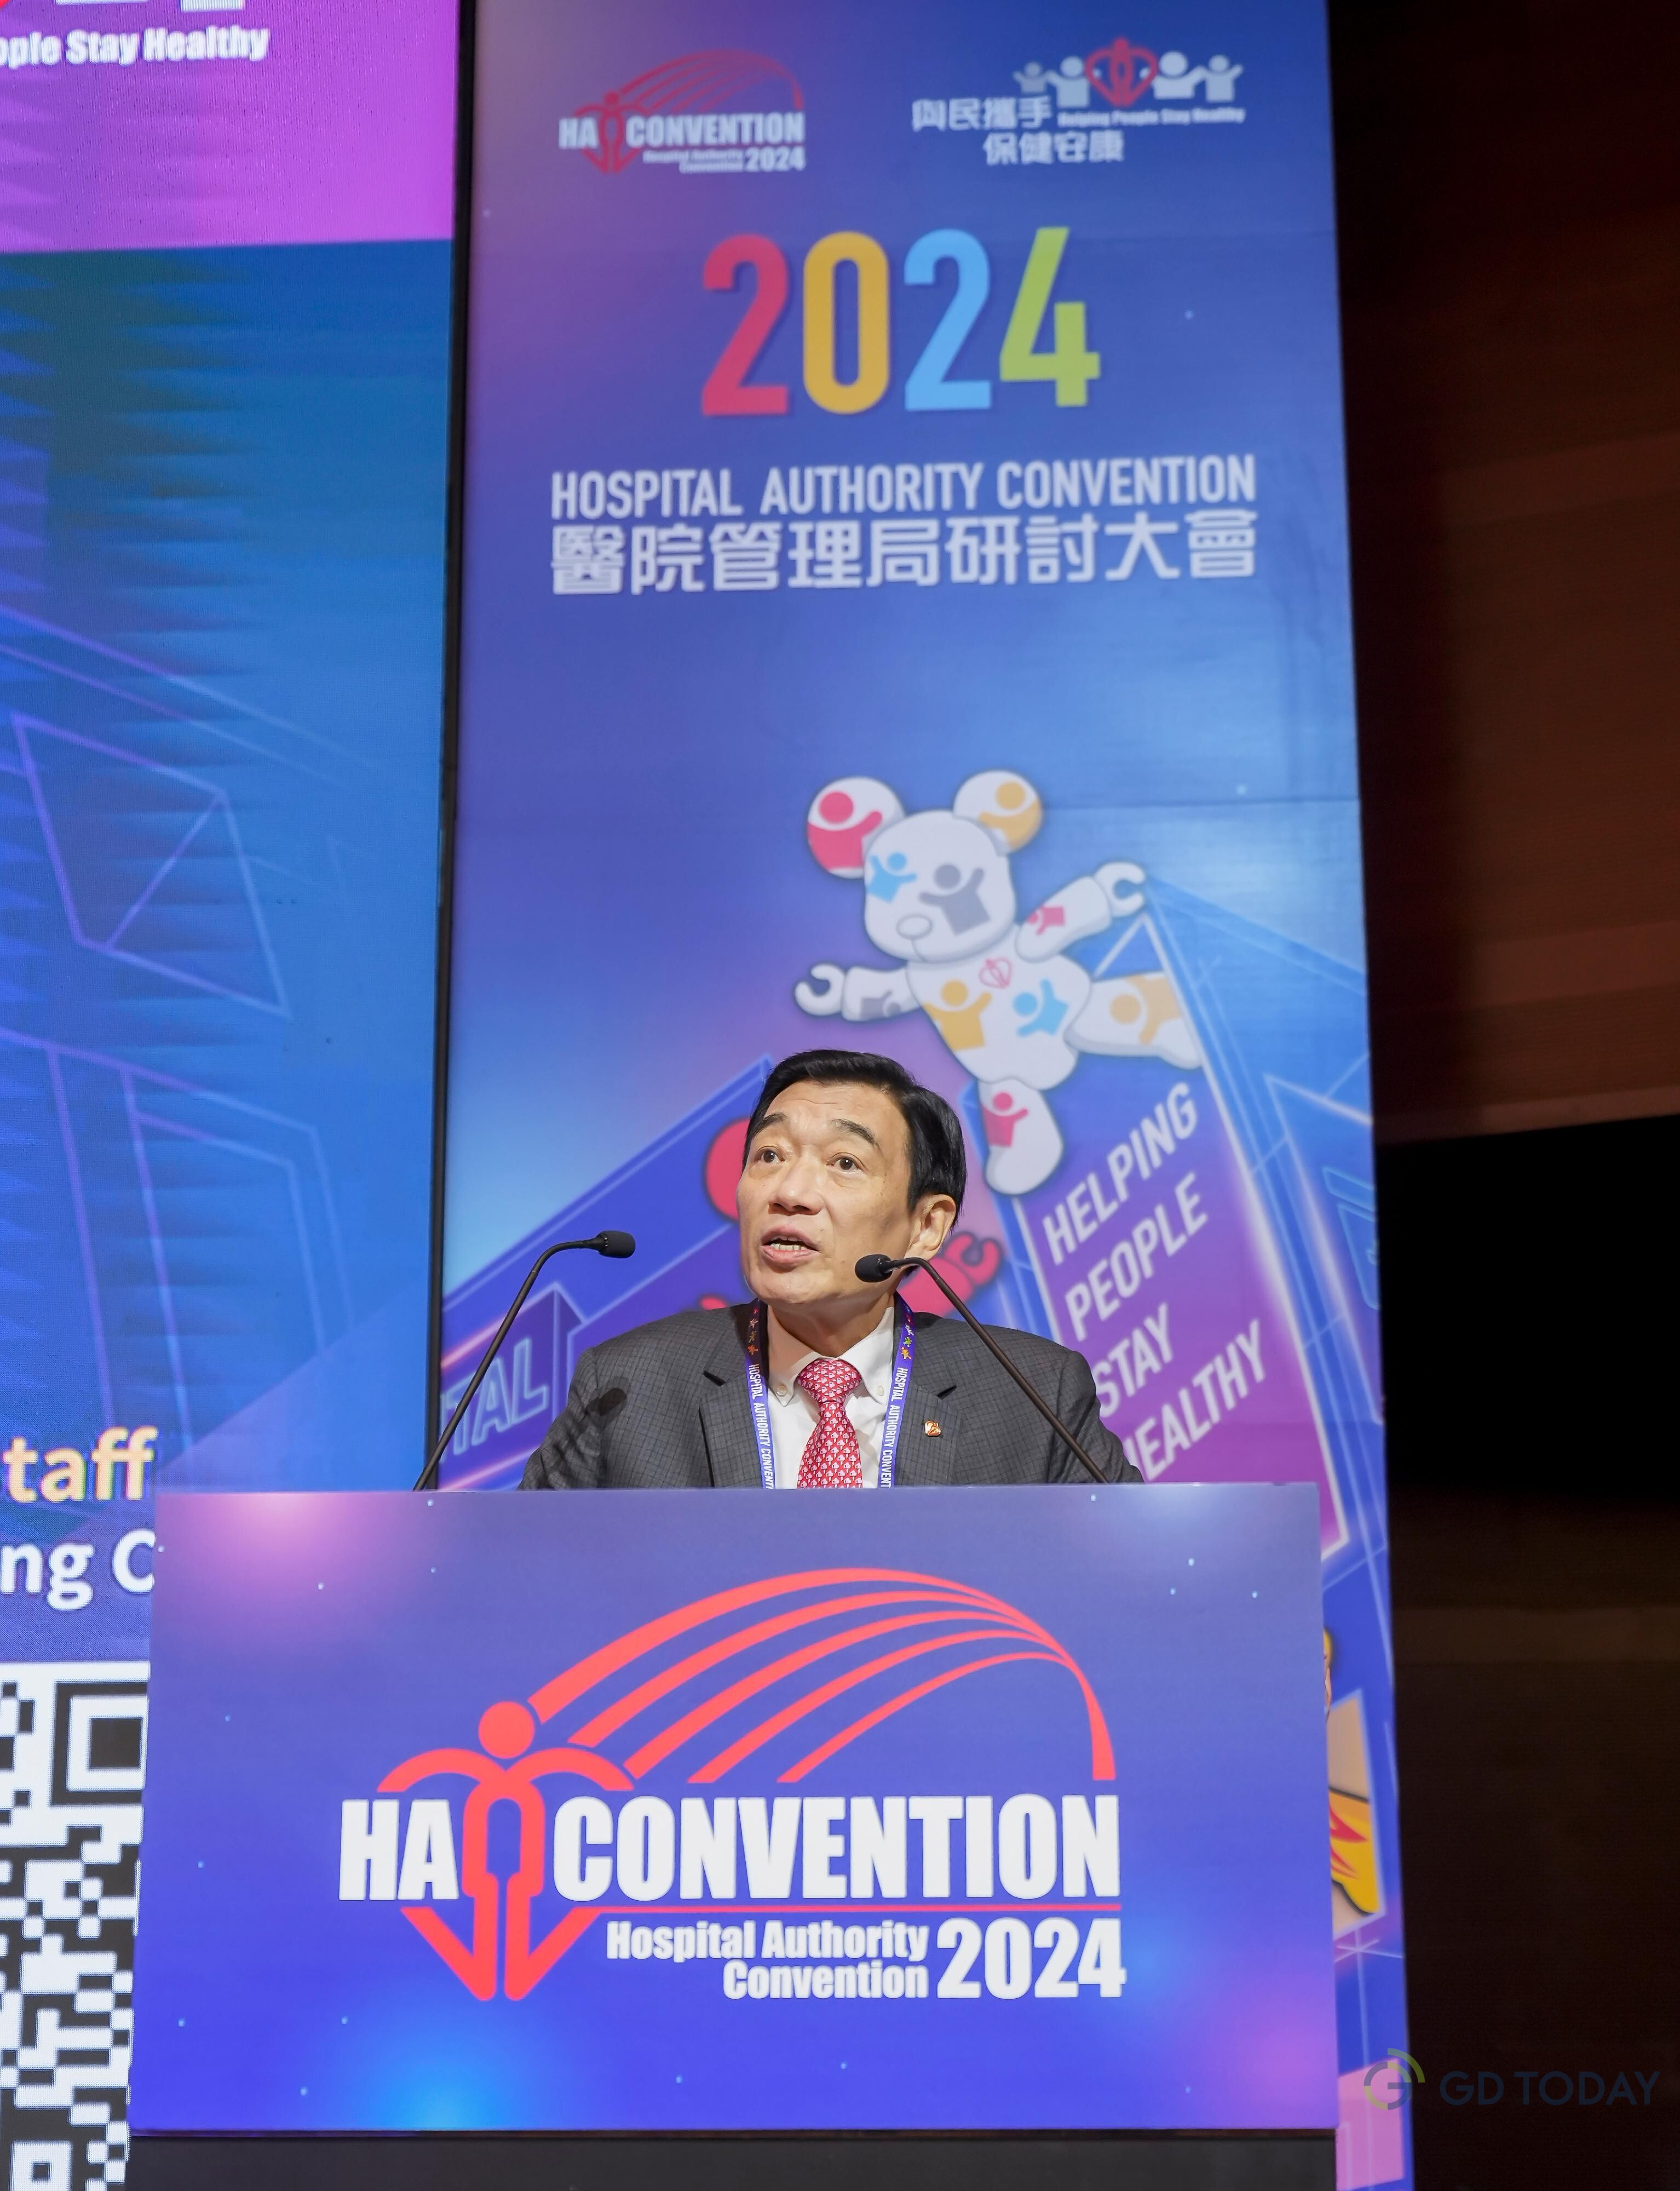 医管局主席范鸿龄于研讨大会开幕典礼致欢迎辞。